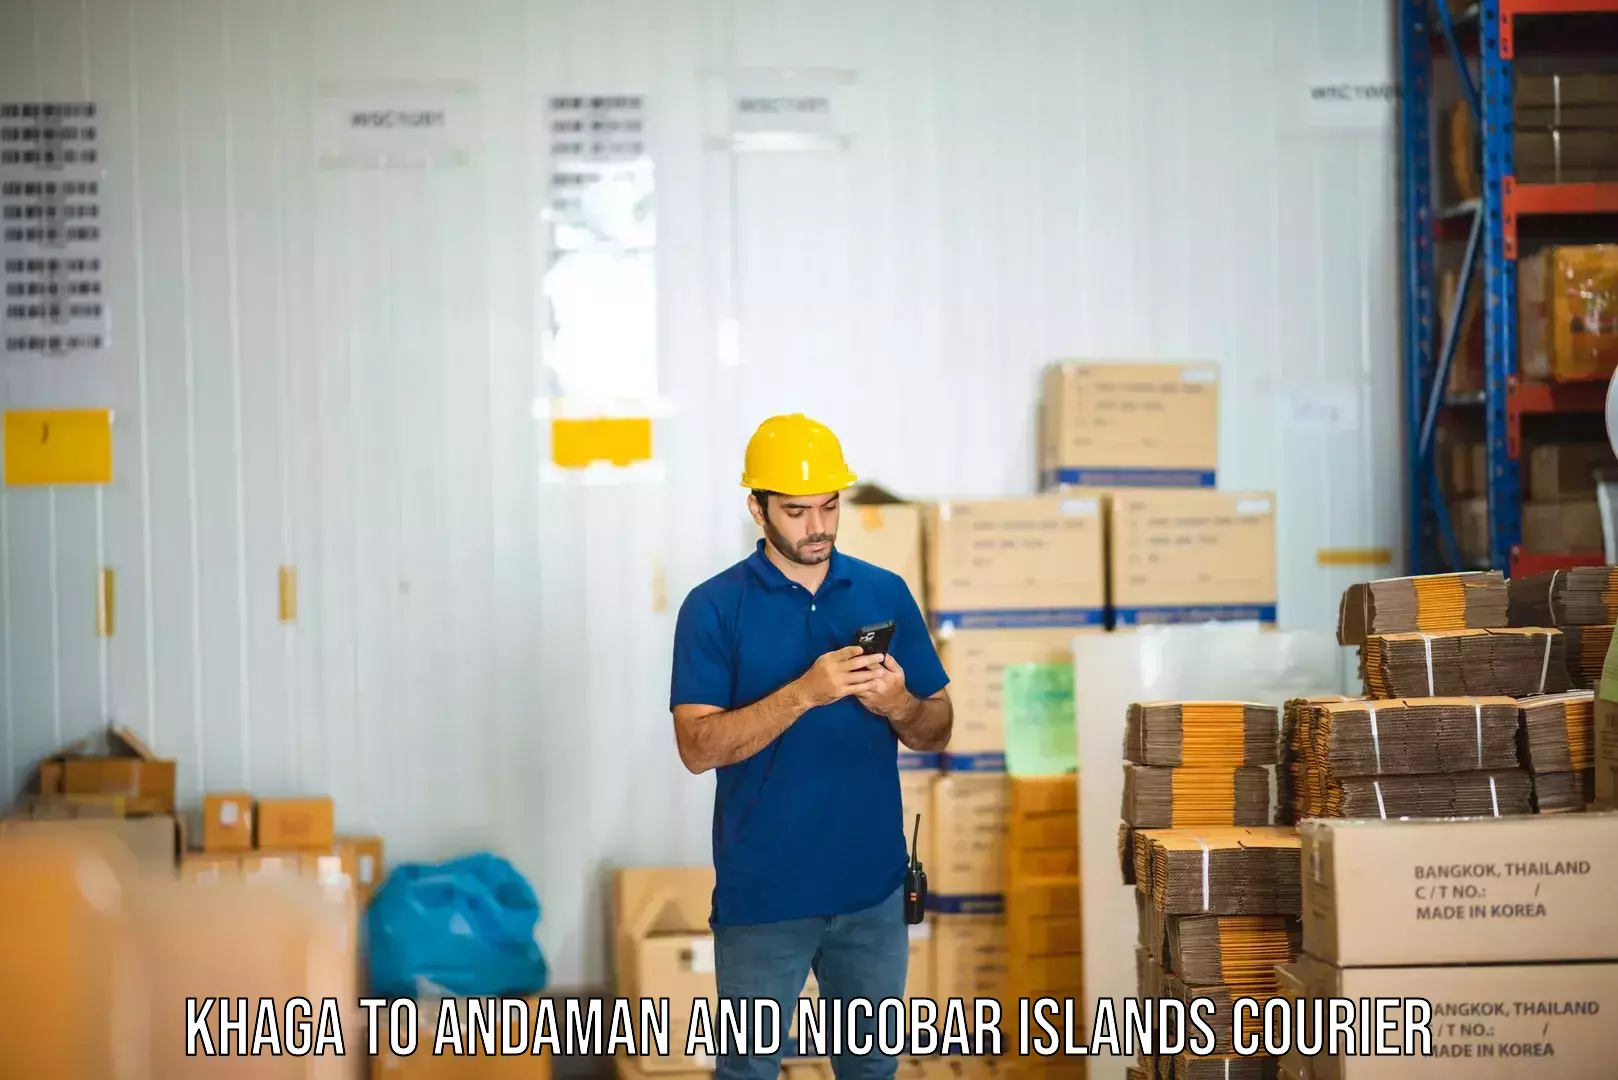 Fast-track shipping solutions Khaga to Andaman and Nicobar Islands